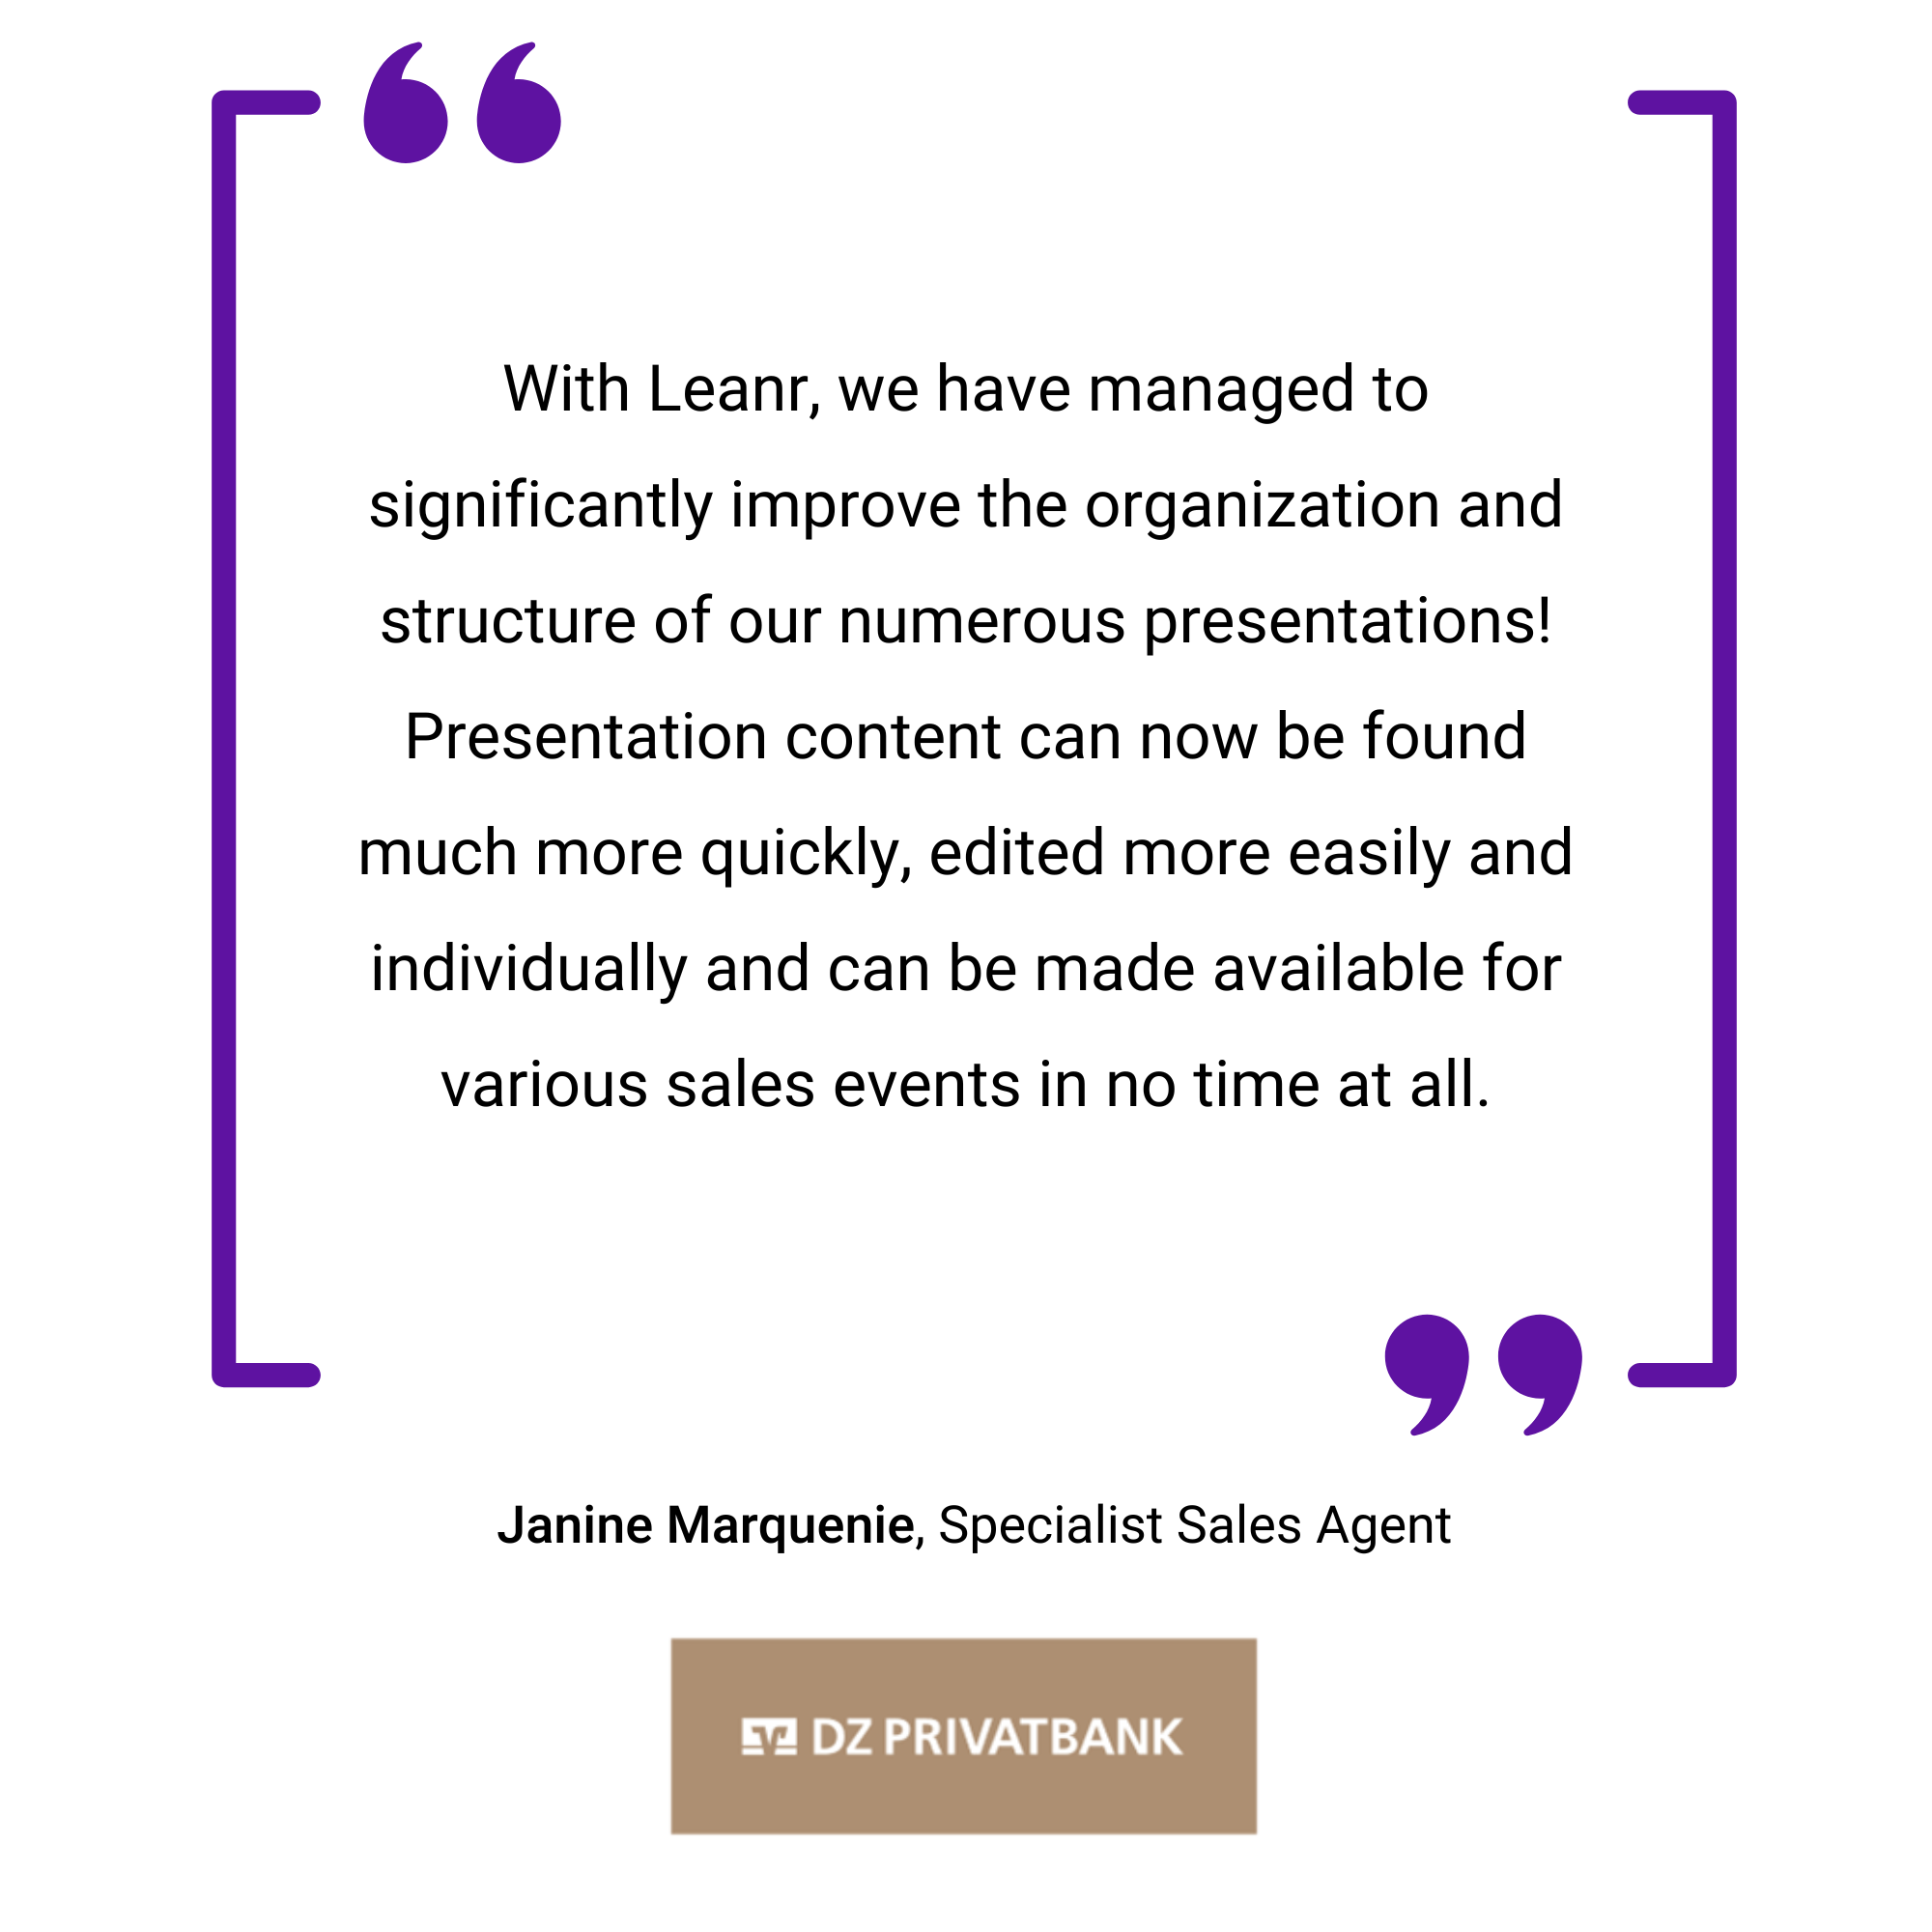 Quadratisches, violett umrandetes Bild mit einer Empfehlung von Janine Marquenie, einer Fachverkäuferin bei der DZ Privatbank, die Leanr für die verbesserte Organisation und Präsentation von Inhalten lobt.